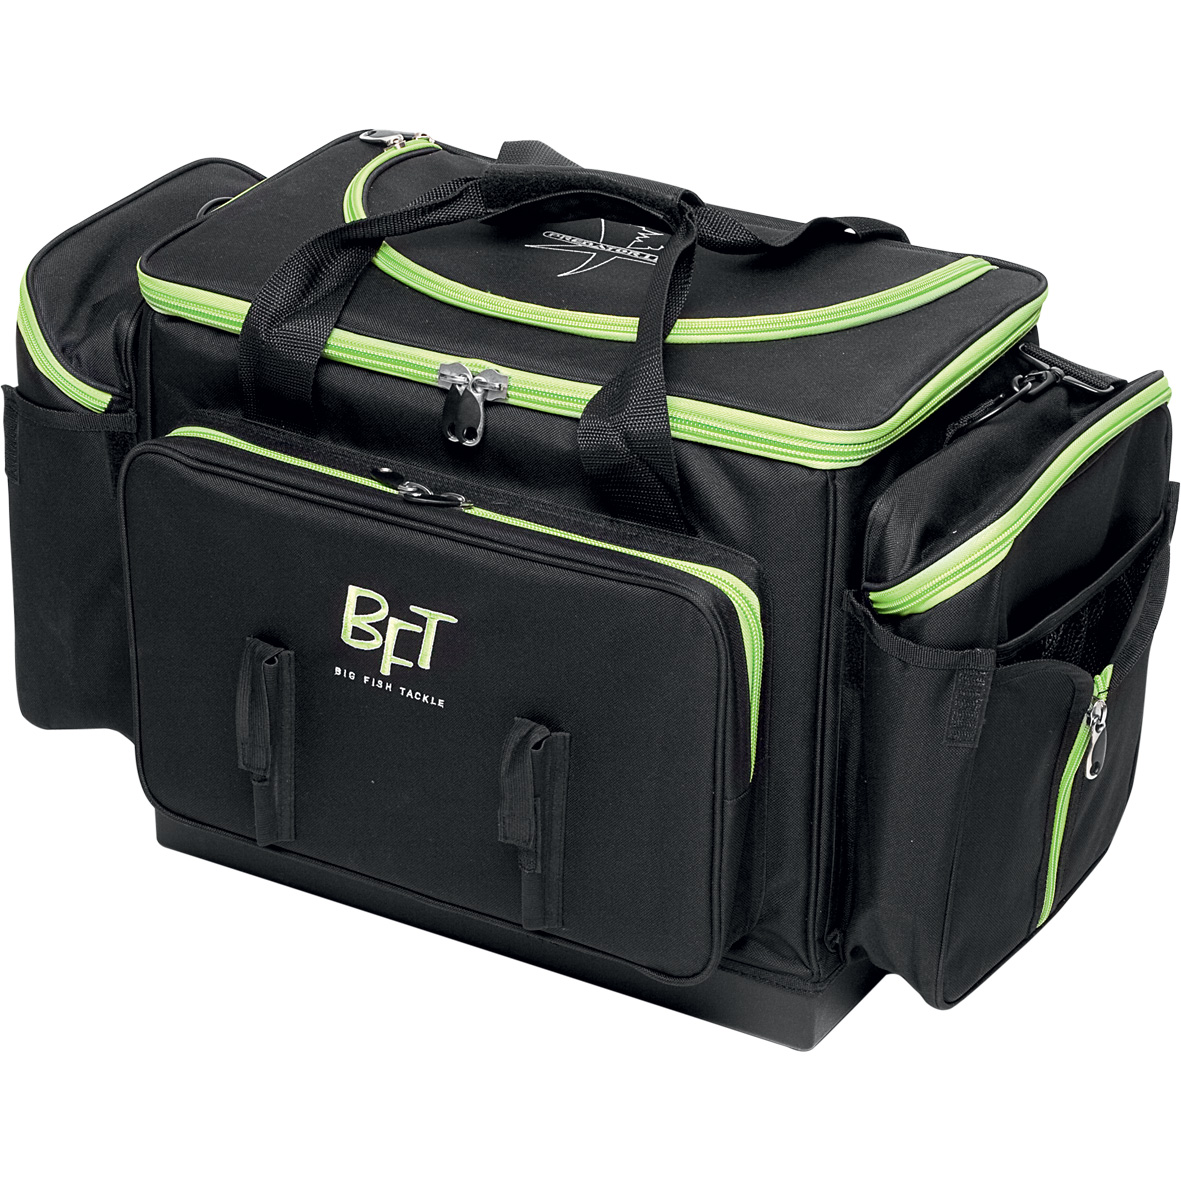 BFT Predator Bag Jerkbait Tackle Box Bag